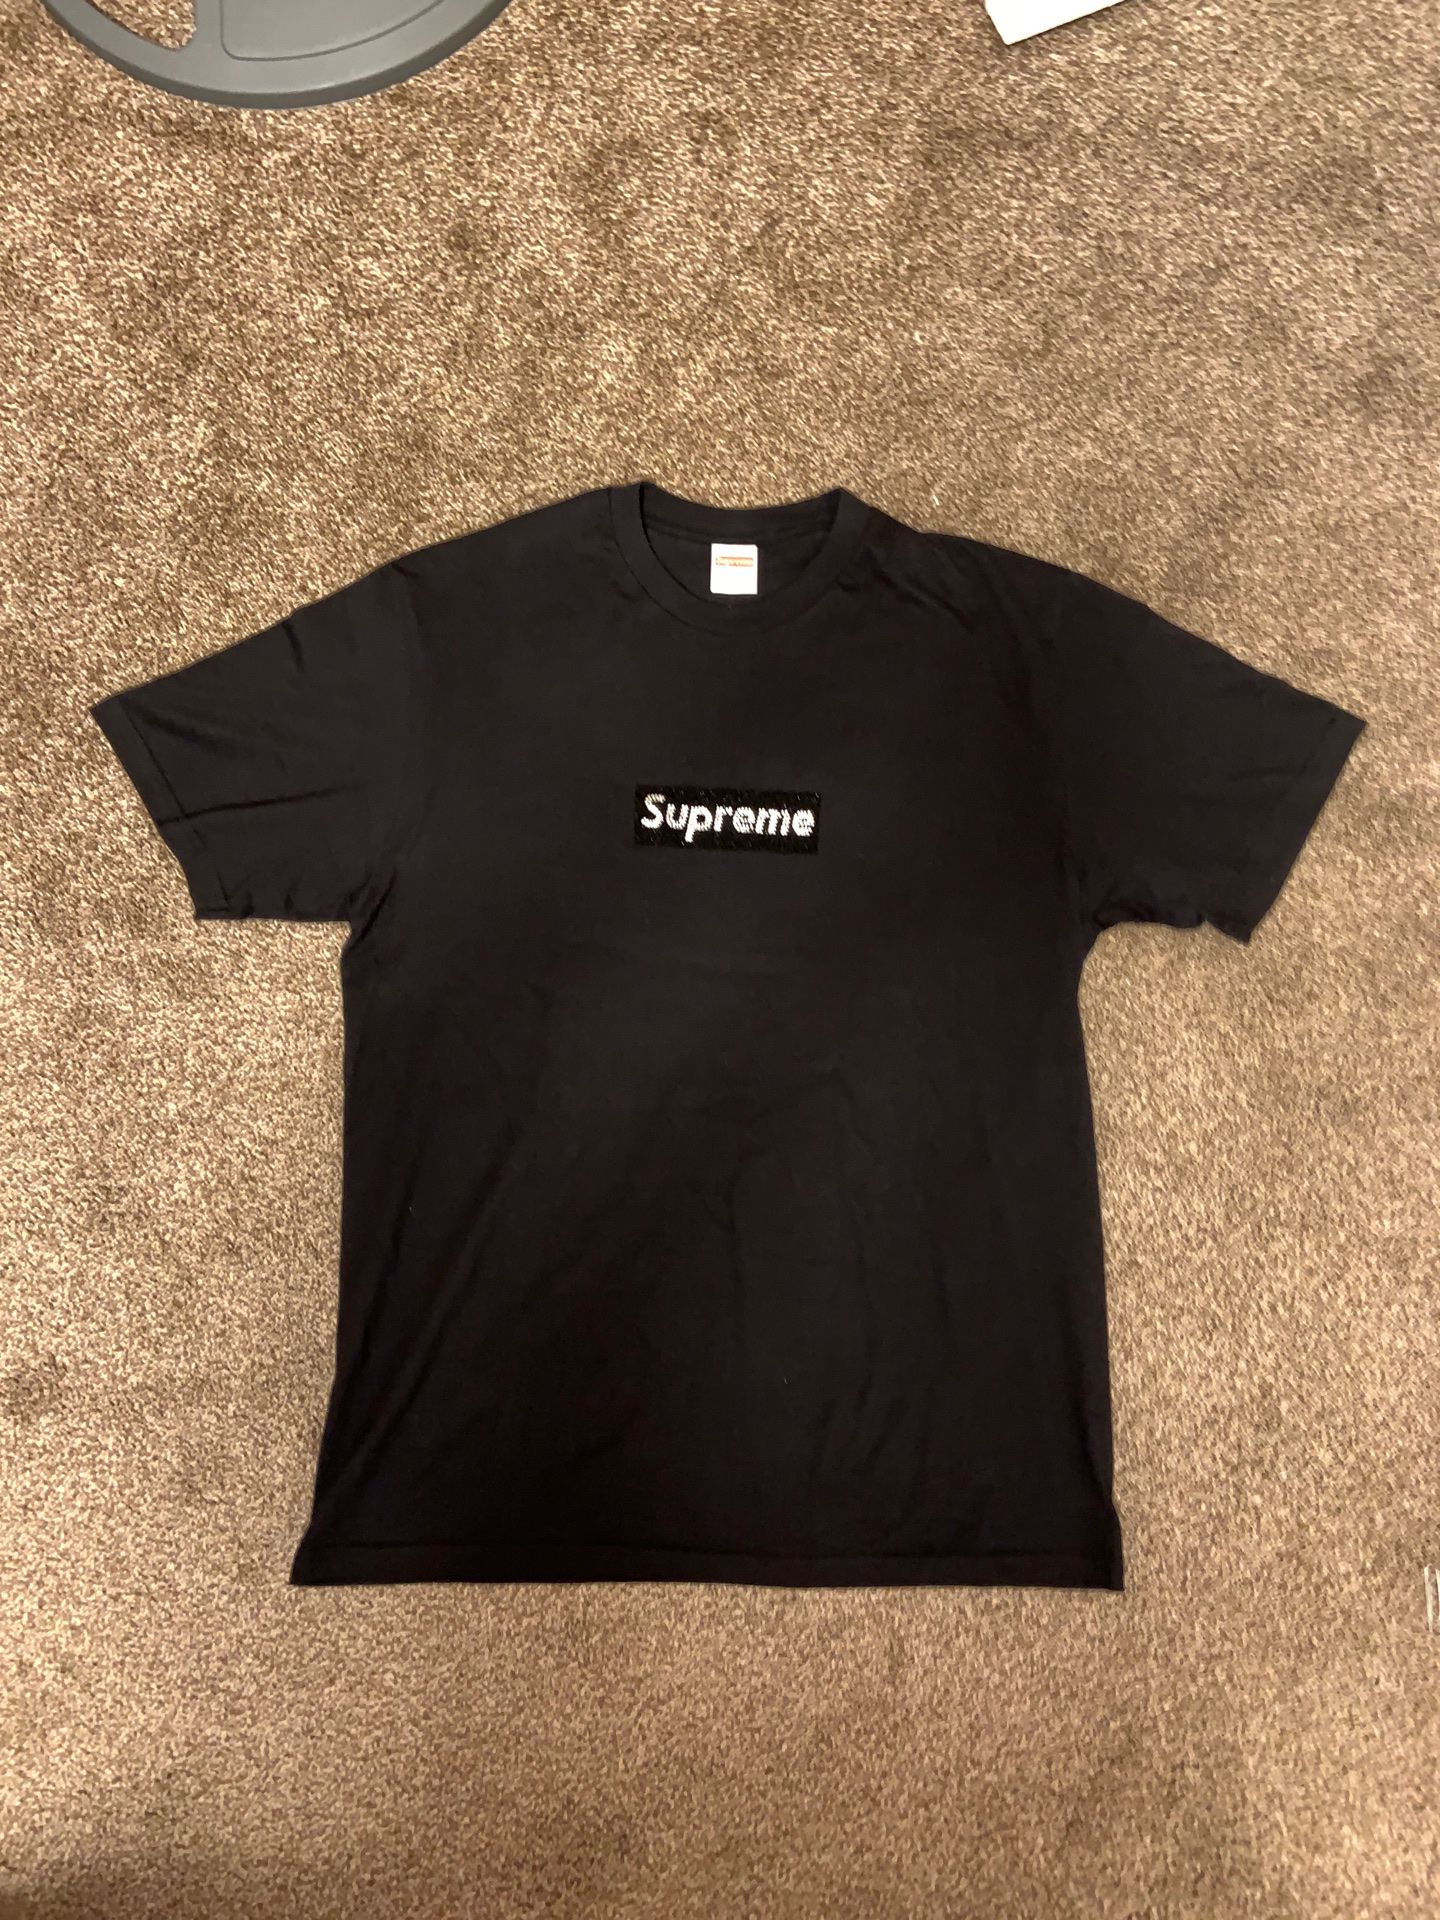 Supreme x Swarovski box logo tee shirt